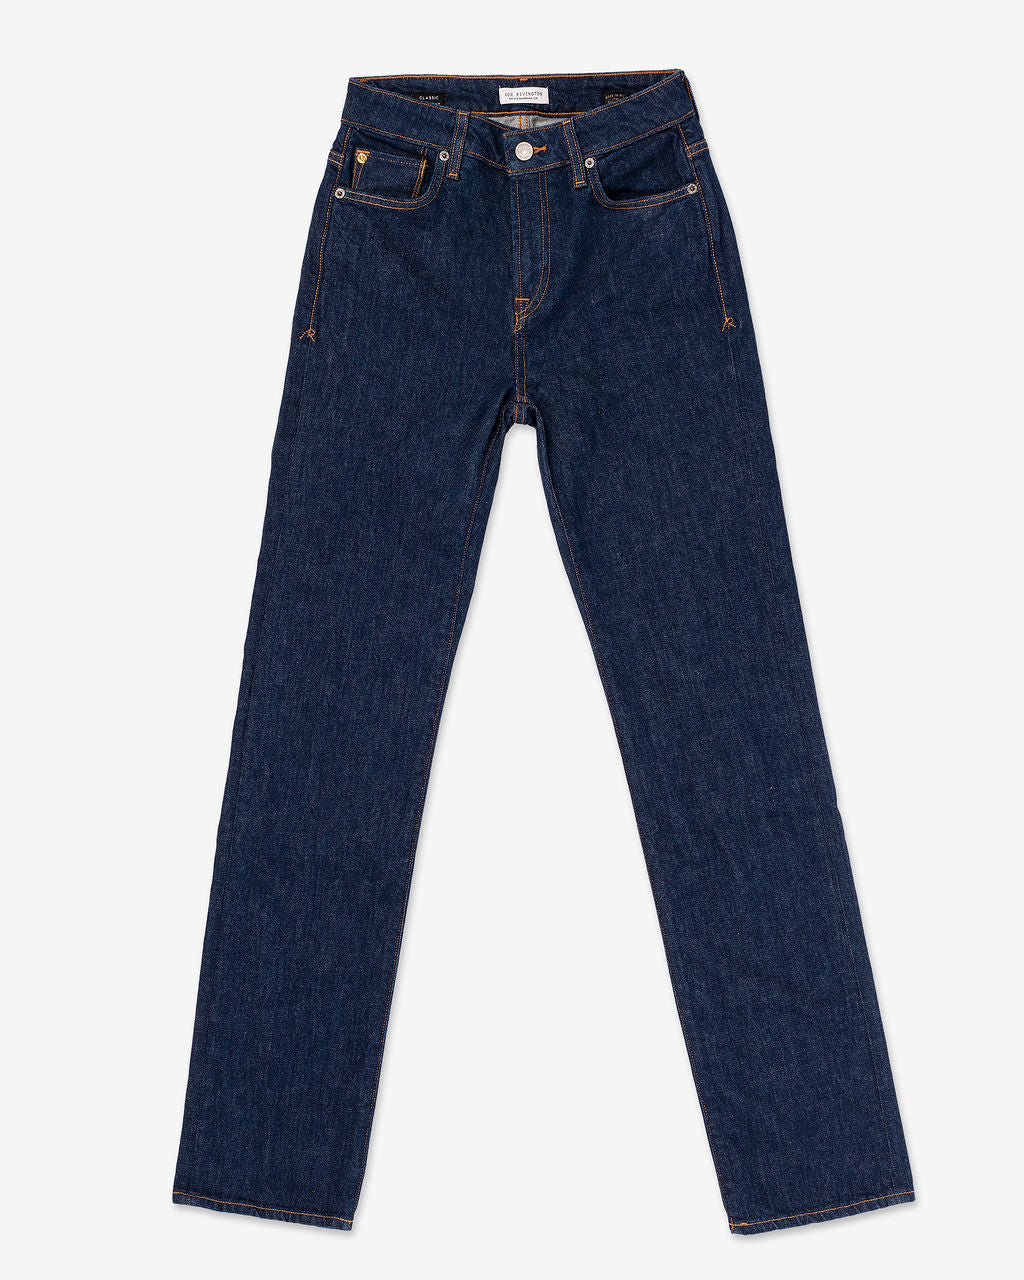 Women's Classic Straight Comfort Denim Jeans - Dark Rinse